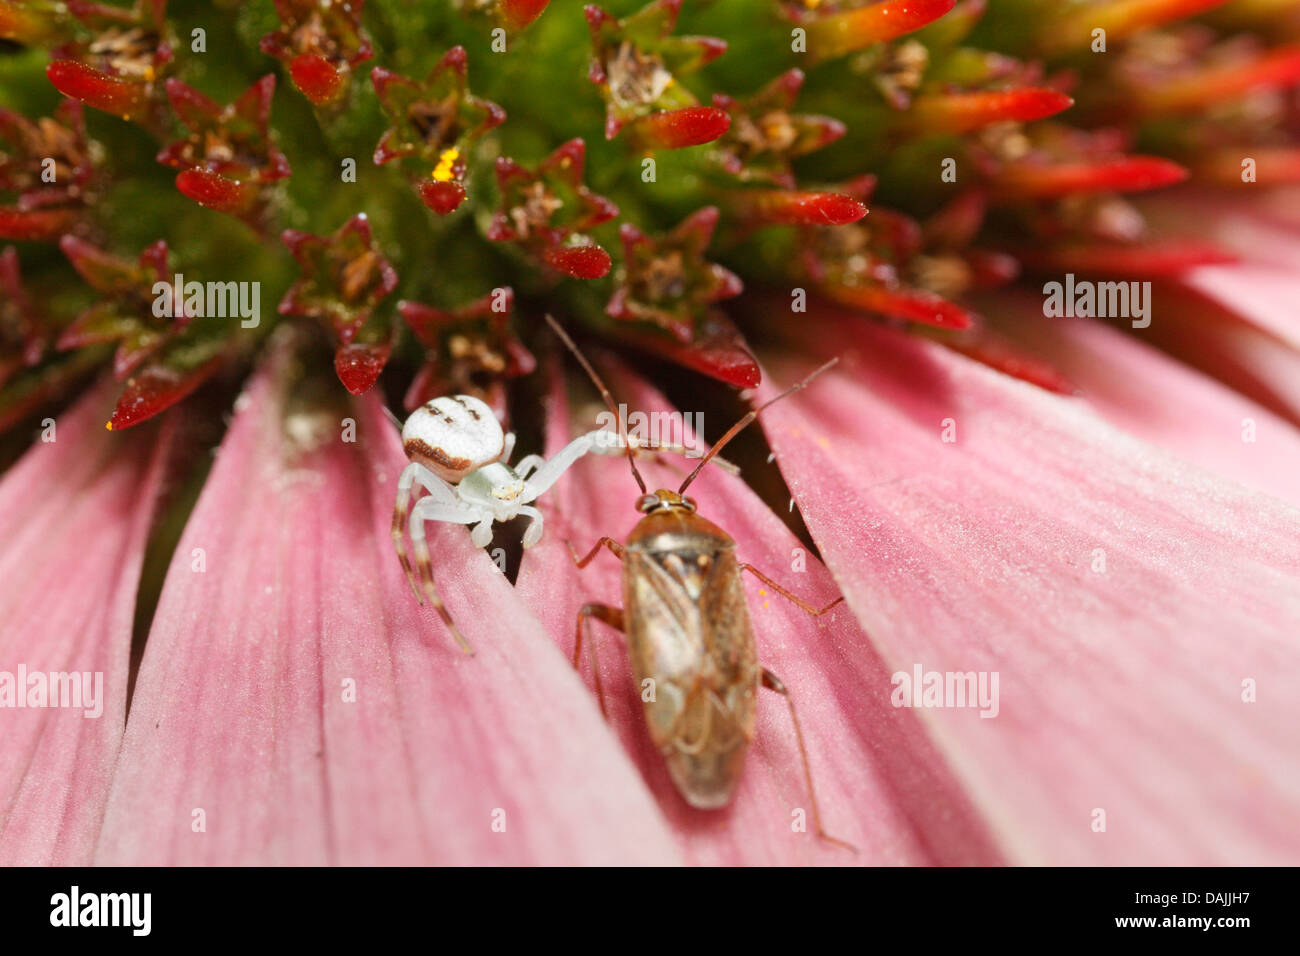 Blume Krabben Spinnen (Misumena spec.), Krabbenspinne und Bug auf einer Echinacea Blume, Deutschland, Bayern Stockfoto